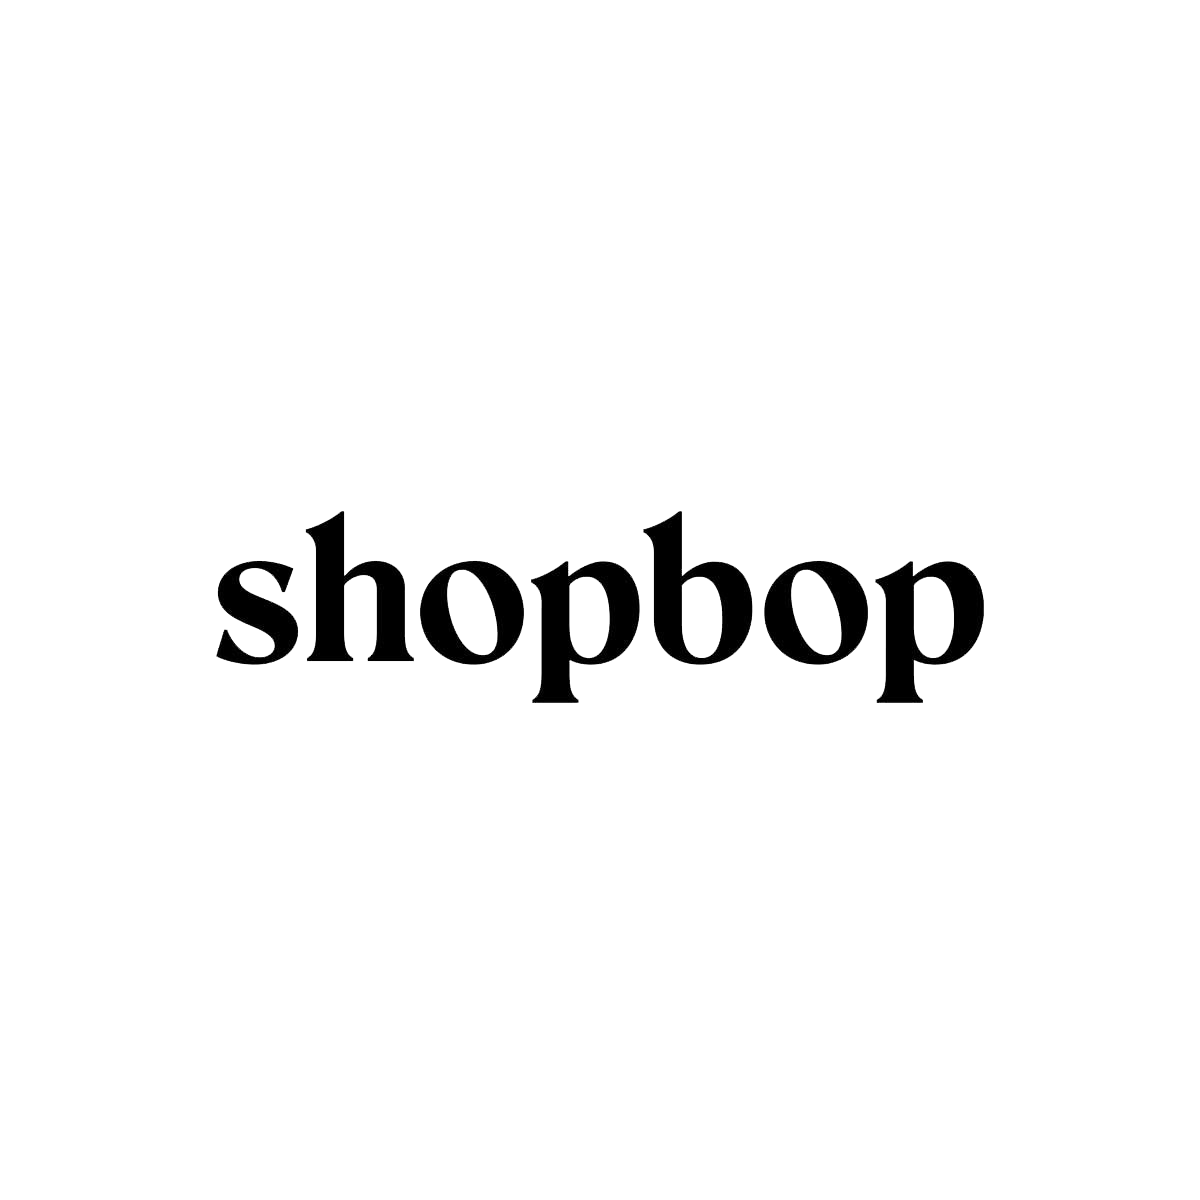 shopbop-logo